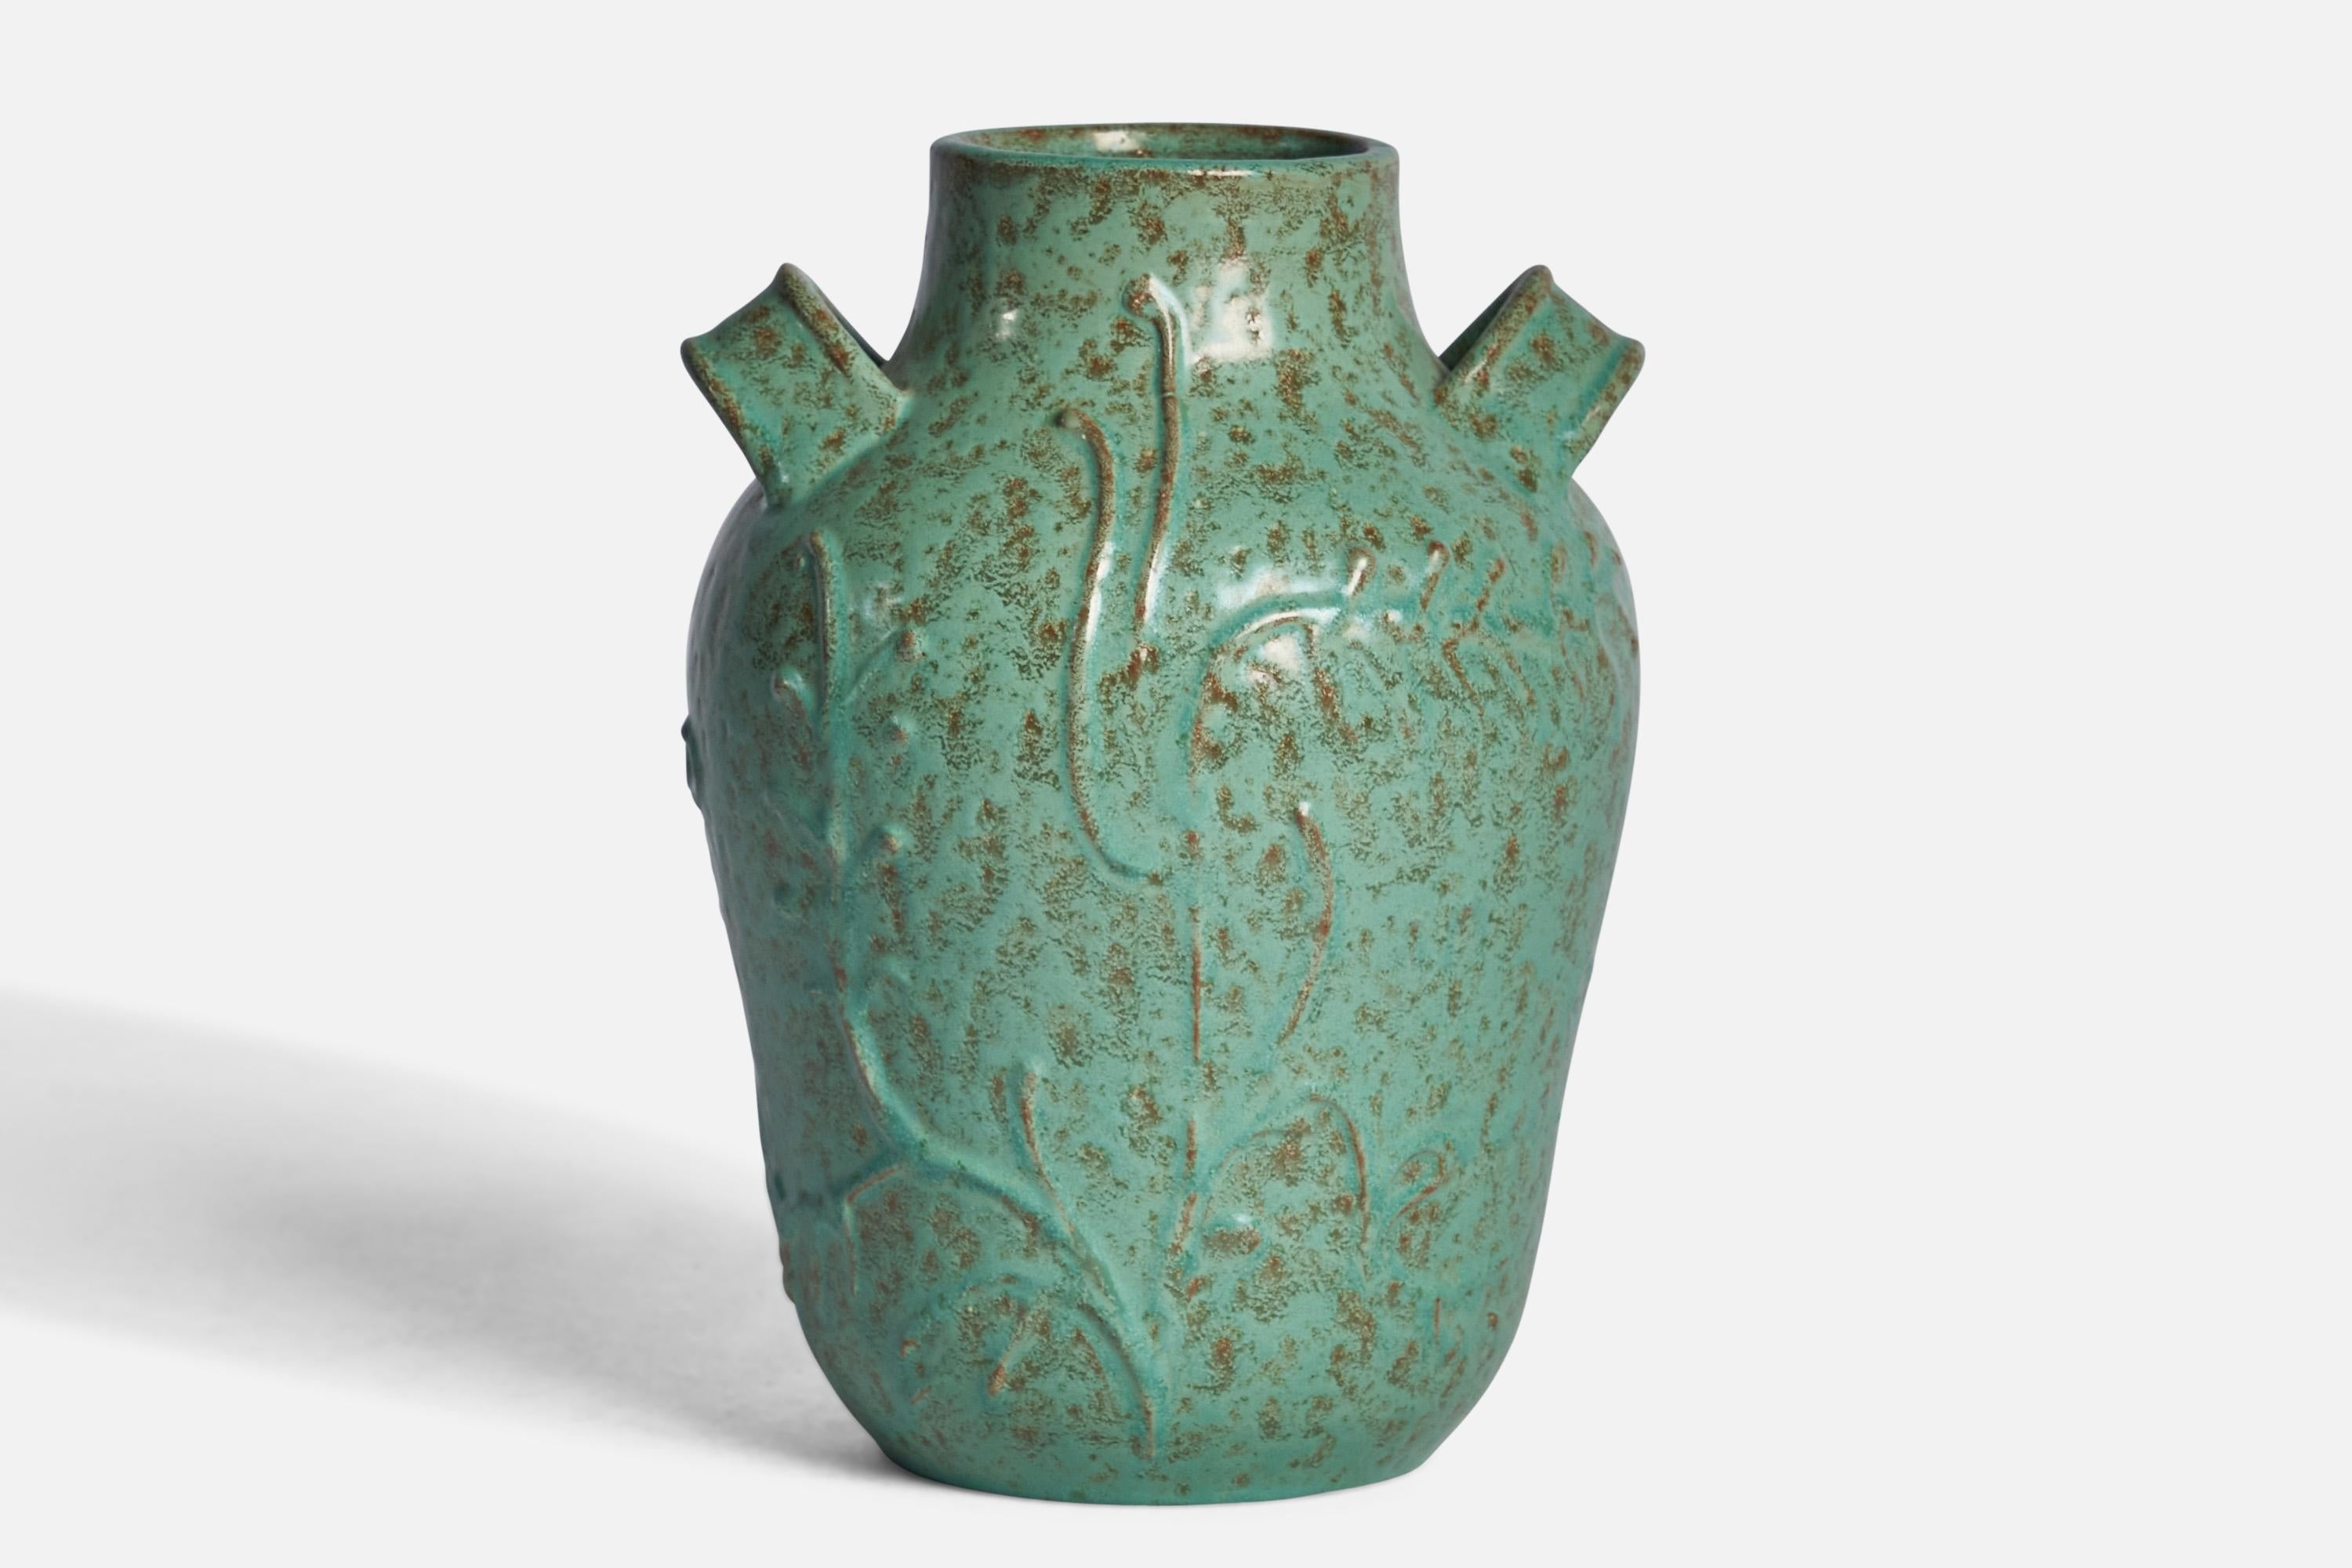 A green-glazed earthenware vase by Nittsjö, Sweden, 1930s.